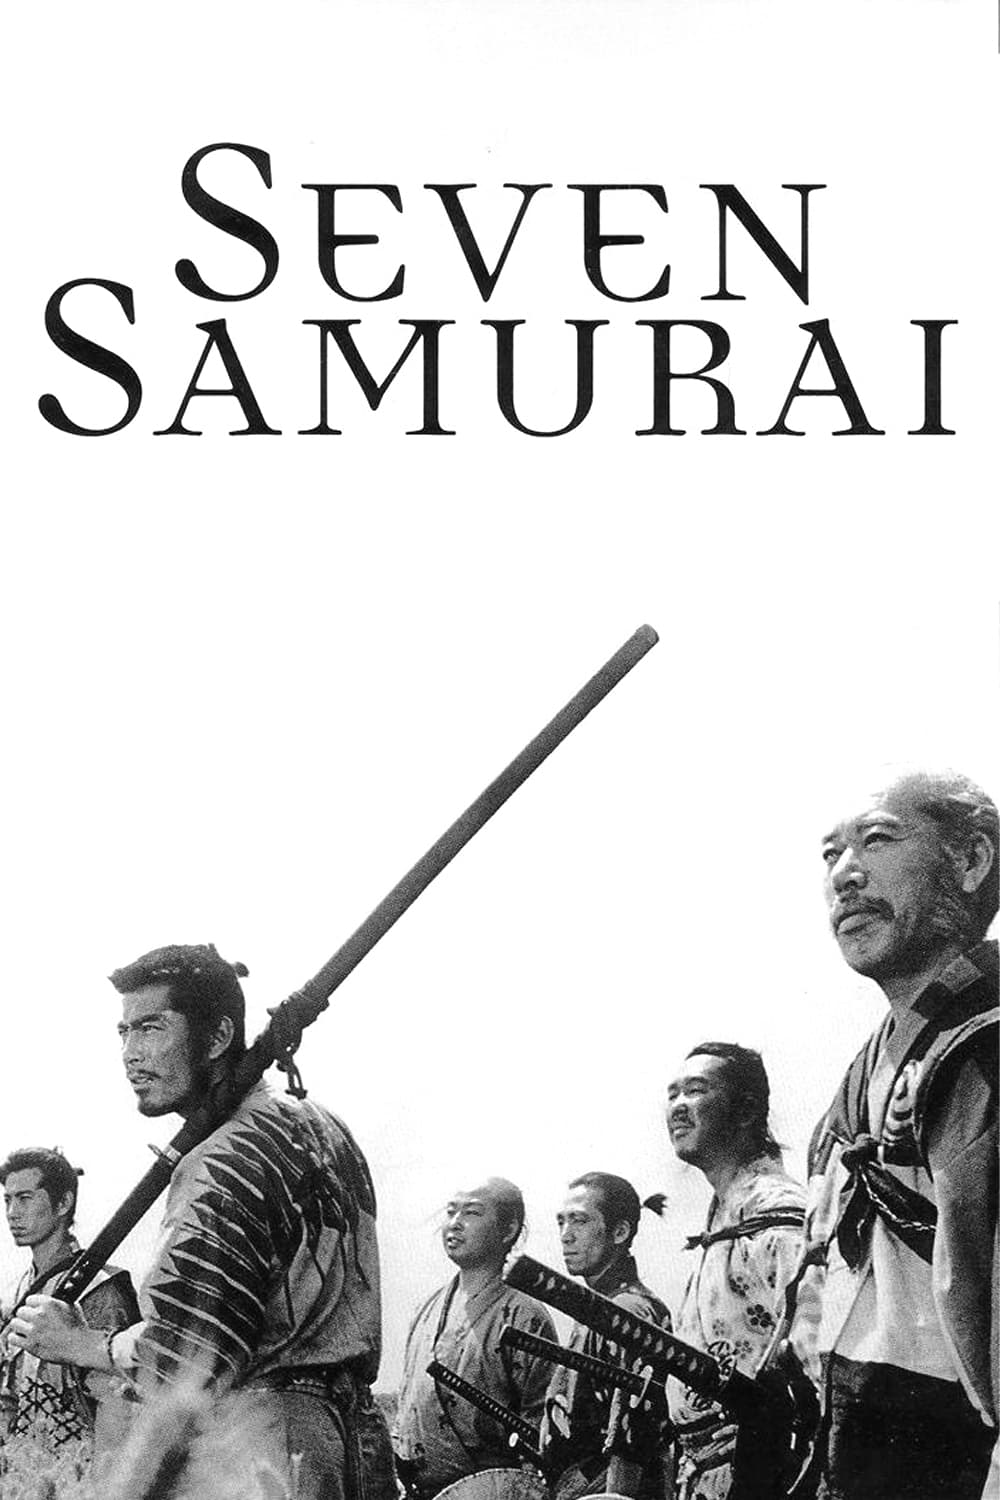 دانلود صوت دوبله فیلم Seven Samurai 1954